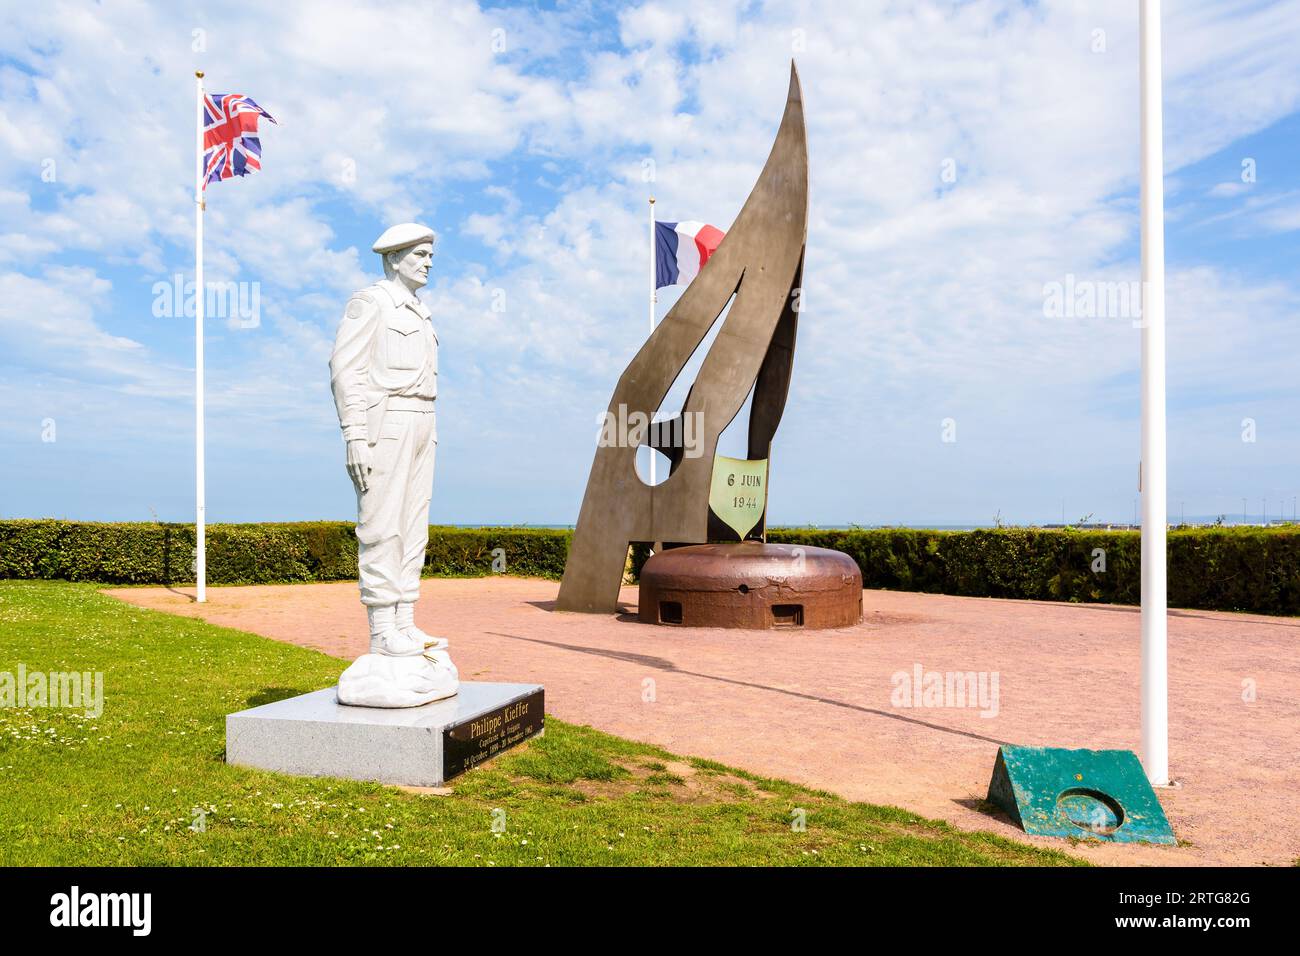 Statue à Philippe Kieffer au mémorial des commandos Kieffer en hommage aux commandos français qui ont débarqué sur Sword Beach en Normandie le 1944 juin. Banque D'Images